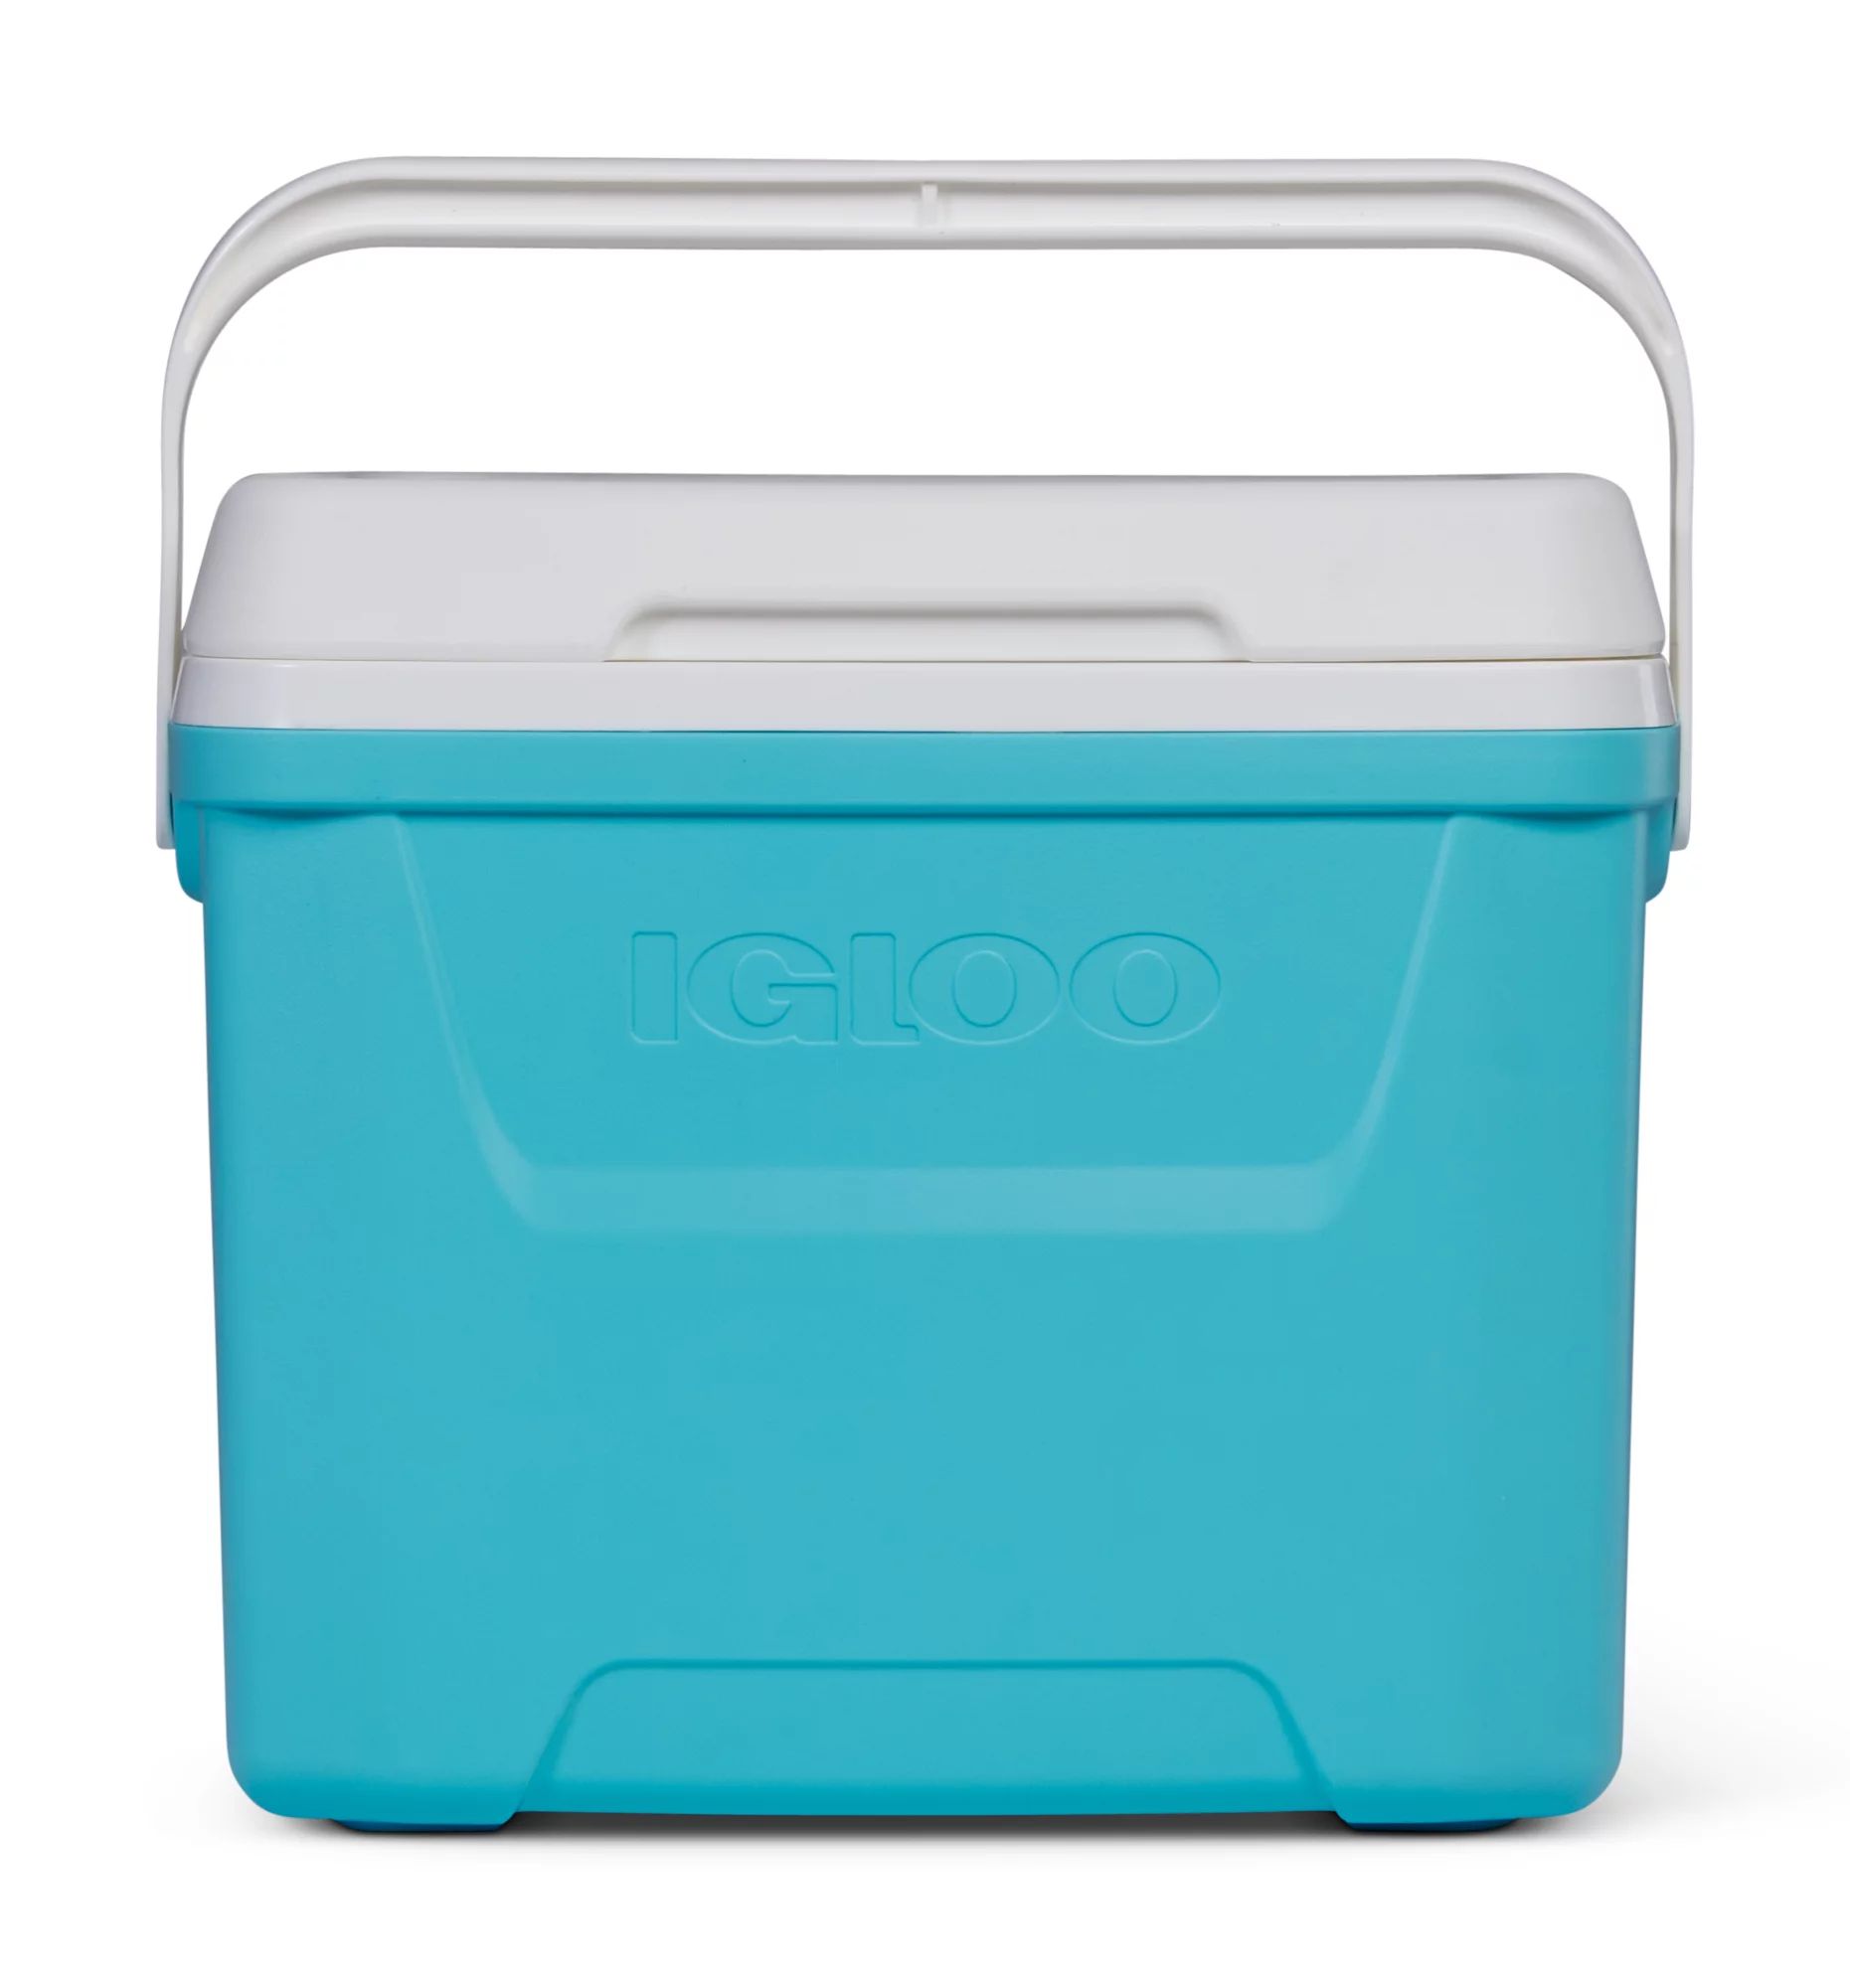 Igloo 28 qt. Hard Sided Ice Chest Cooler, Aqua Blue and White | Walmart (US)